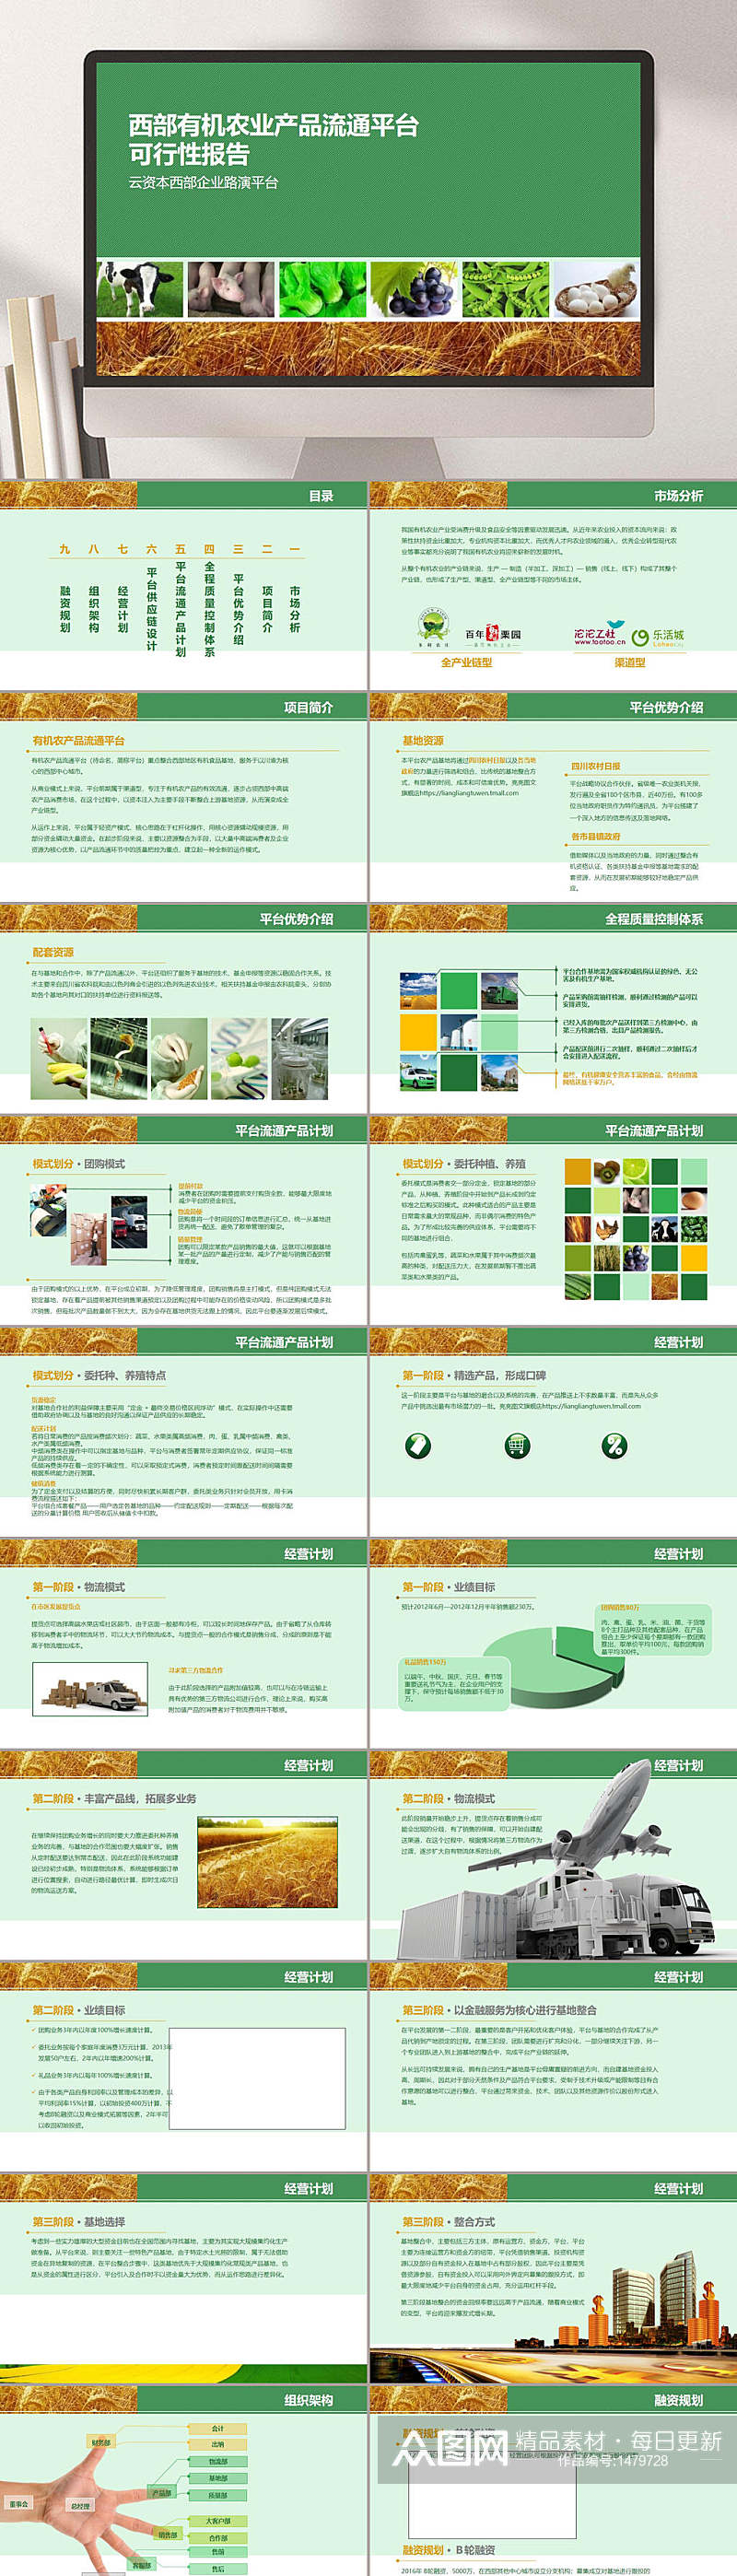 绿色精选餐饮系列模板PPT素材